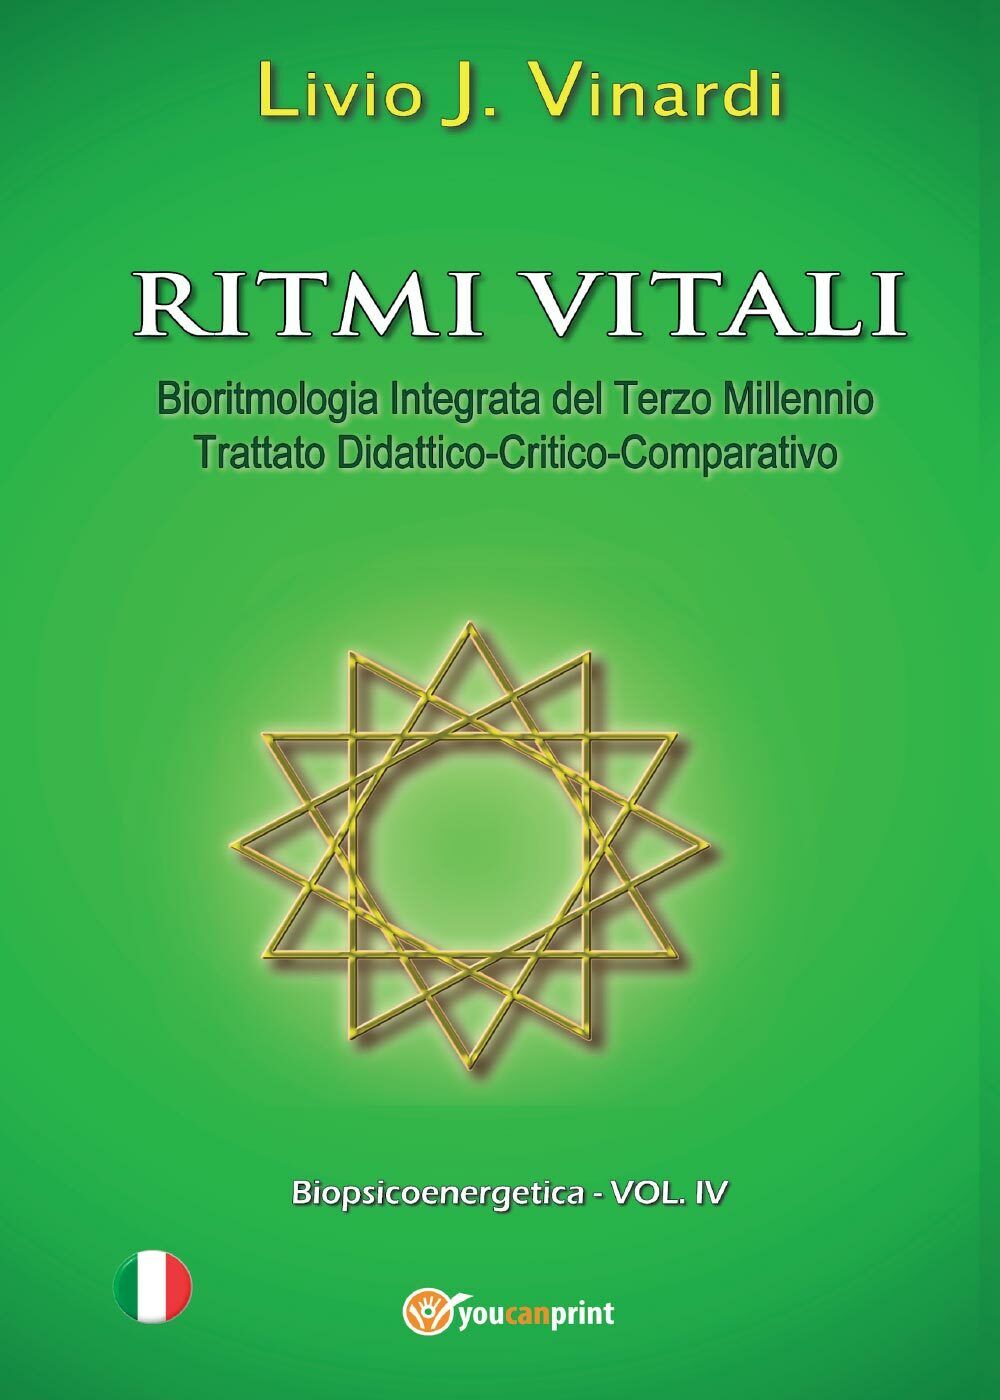 Ritmi vitali - Bioritmologia Integrata del Terzo Millennio (Trattato didattico) libro usato